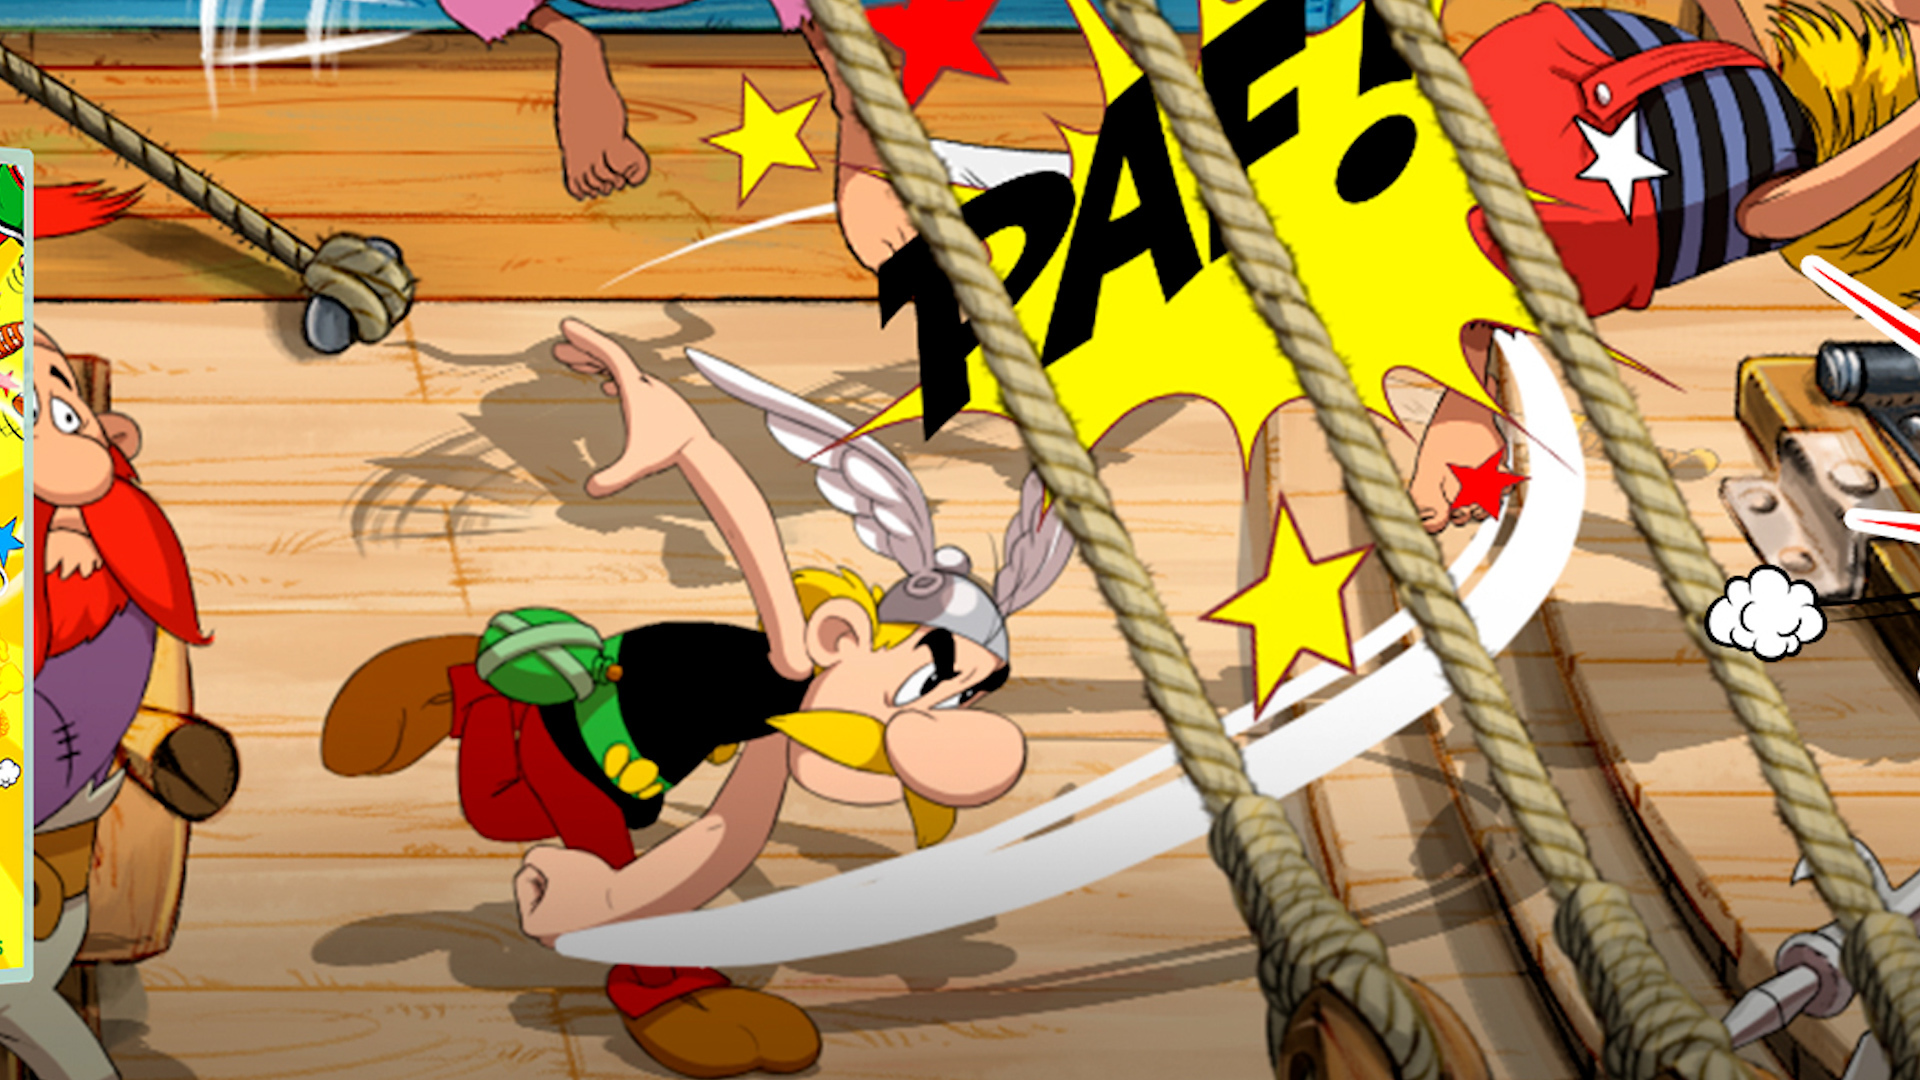 Asterix & Obelix: Slap Them All!